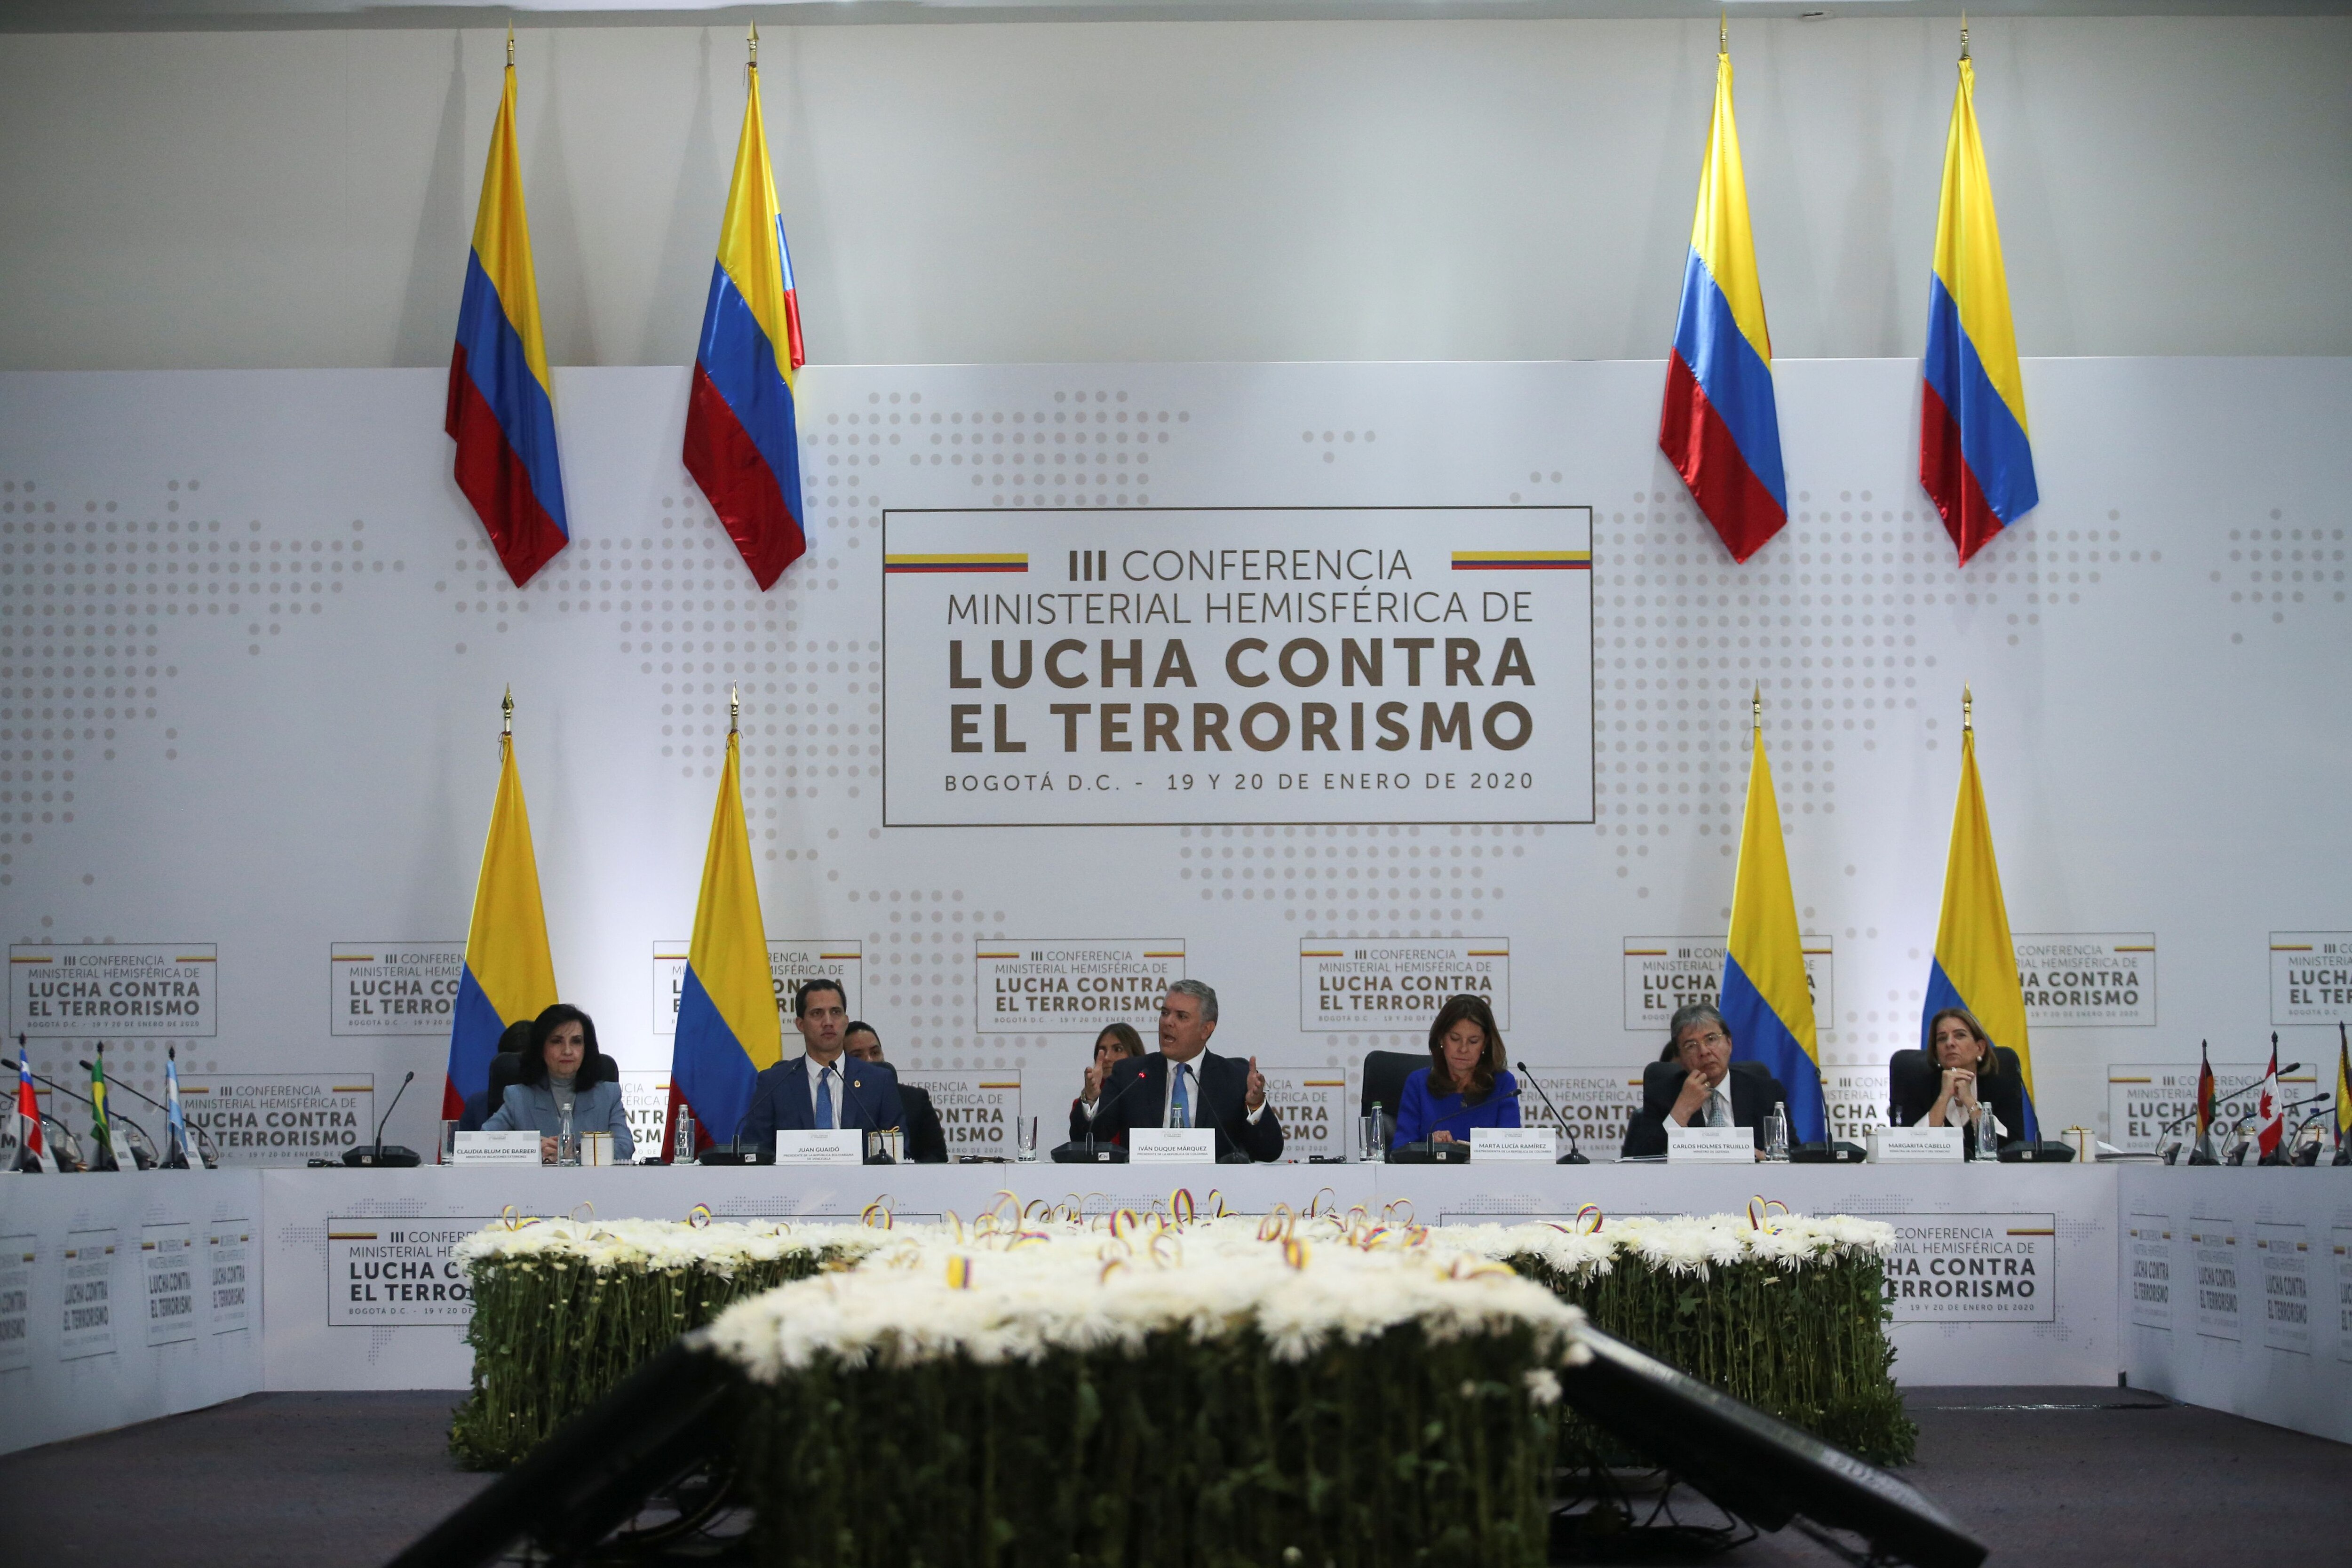 Foto de la Cumbre Hemisférica contra el terrorismo que tuvo lugar el lunes 20 de enero en Colombia. Foto: REUTERS/Luisa Gonzalez